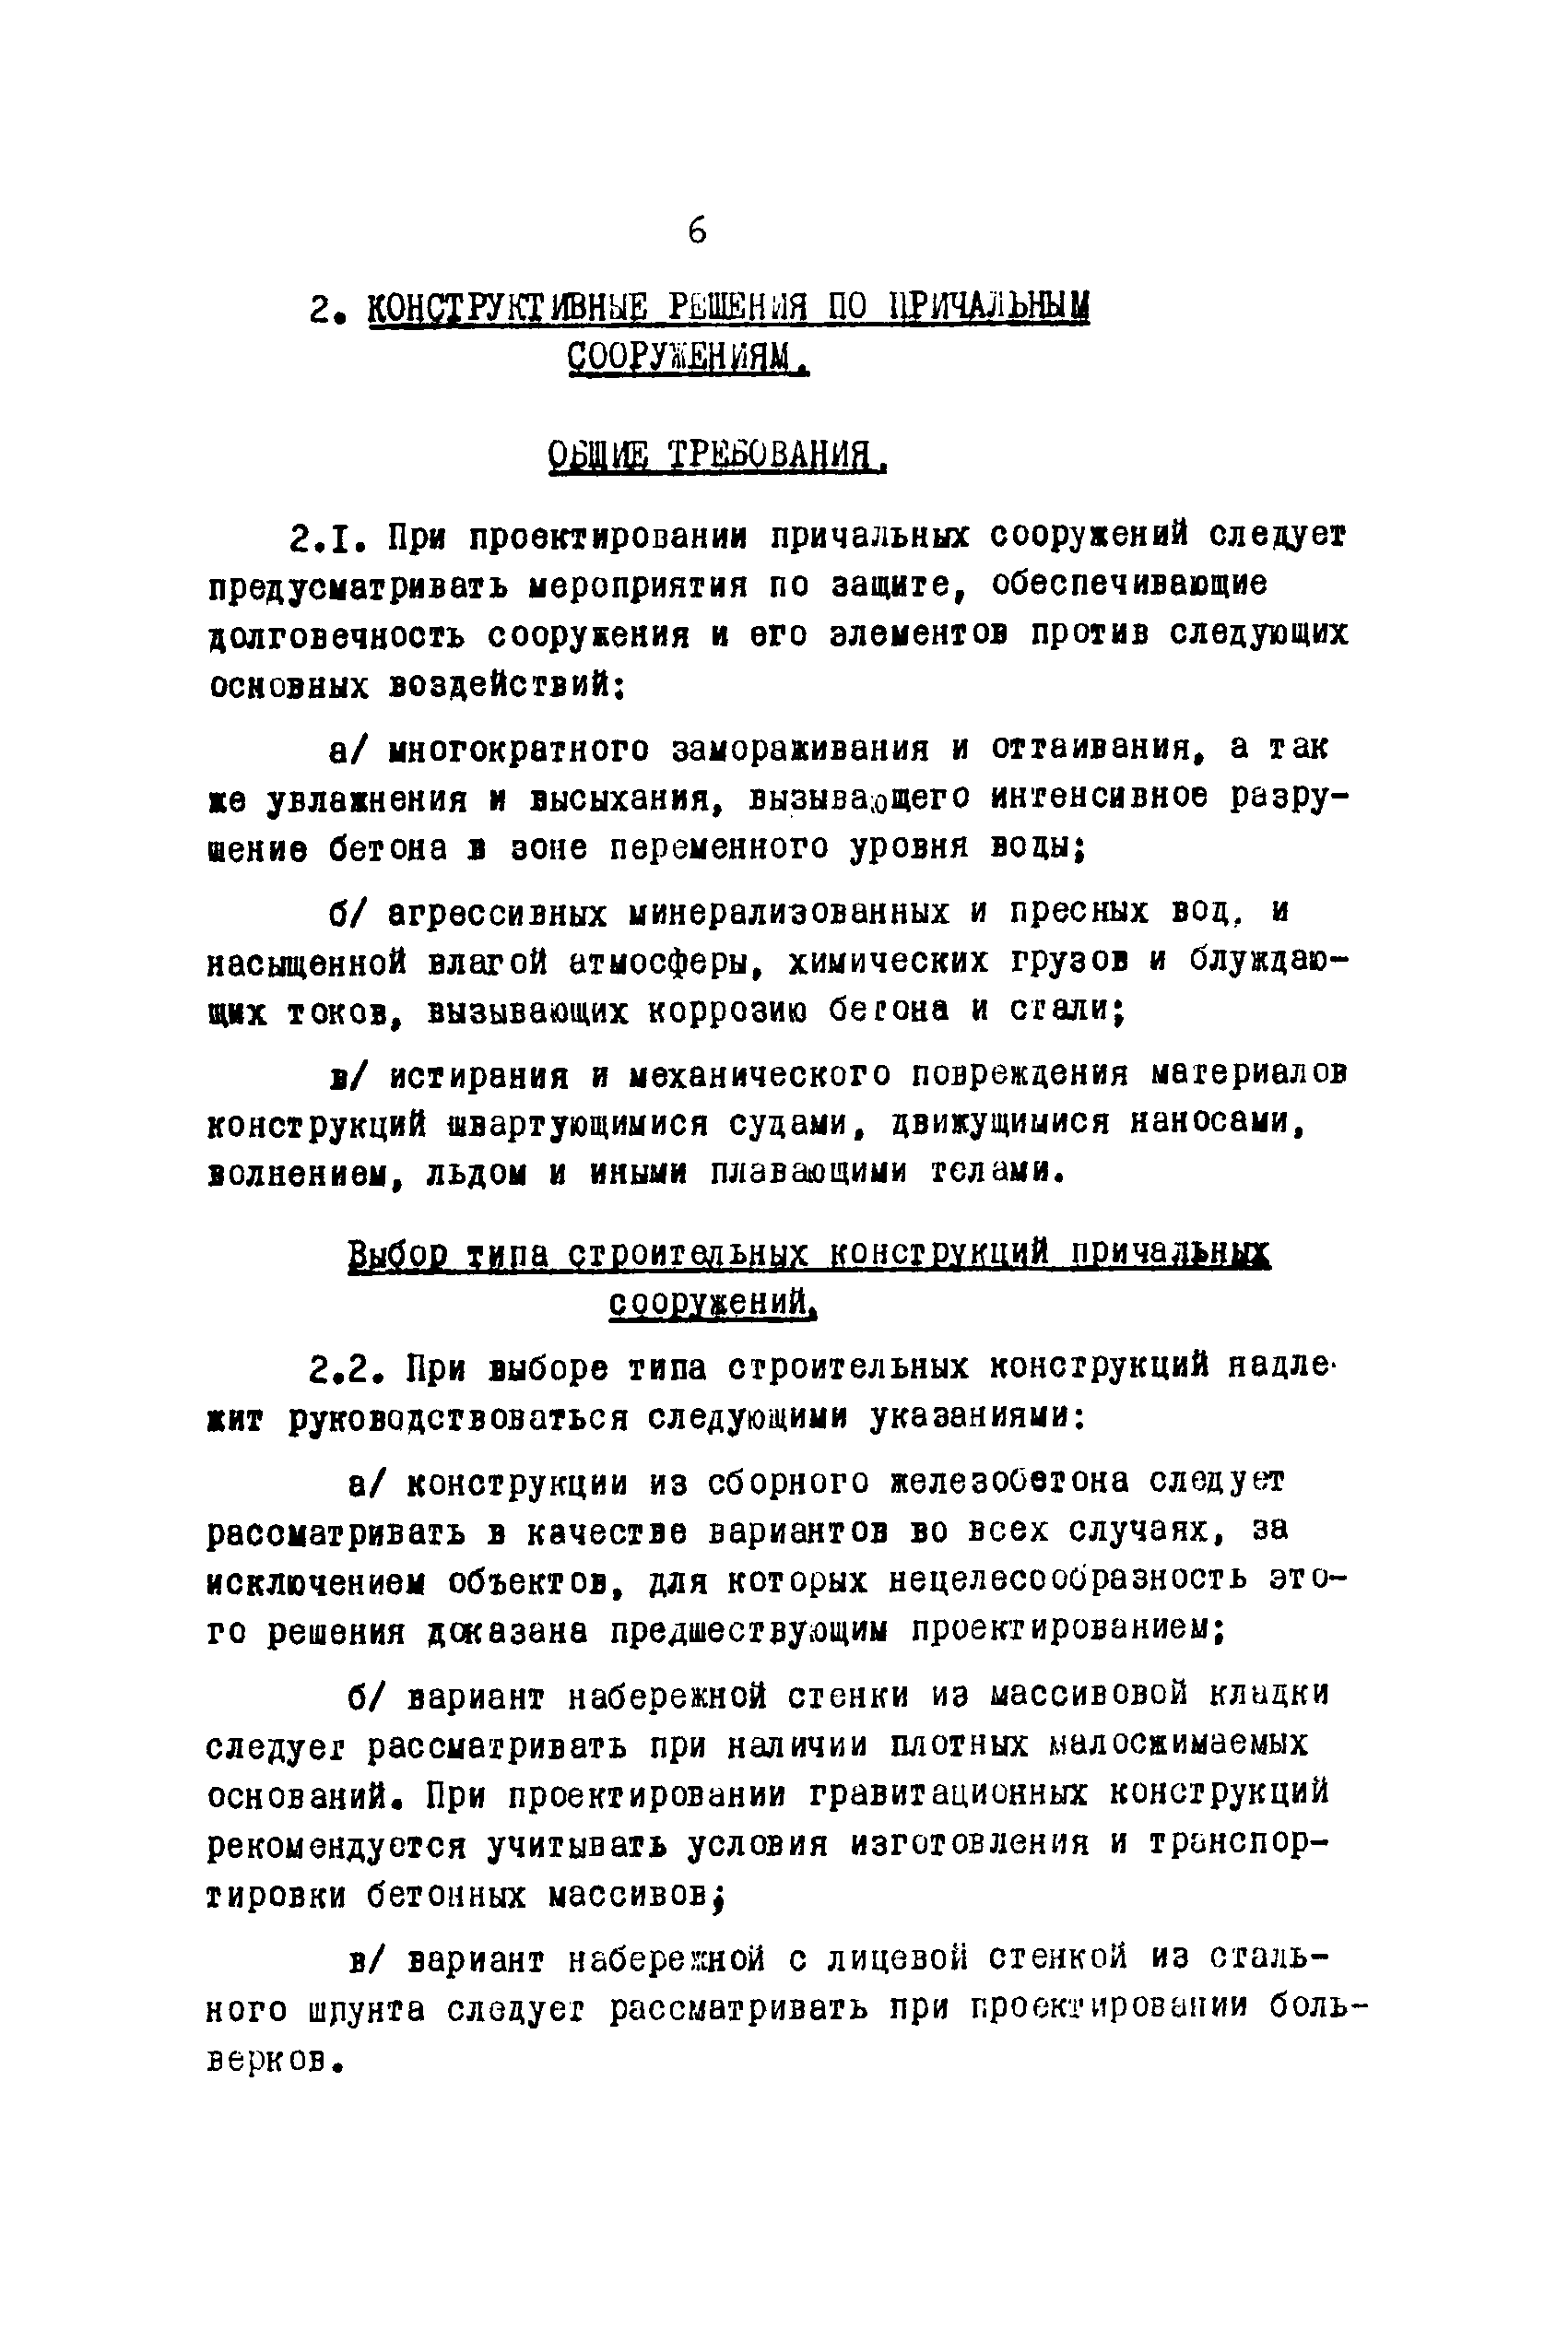 ВСН 3-67/ММФ